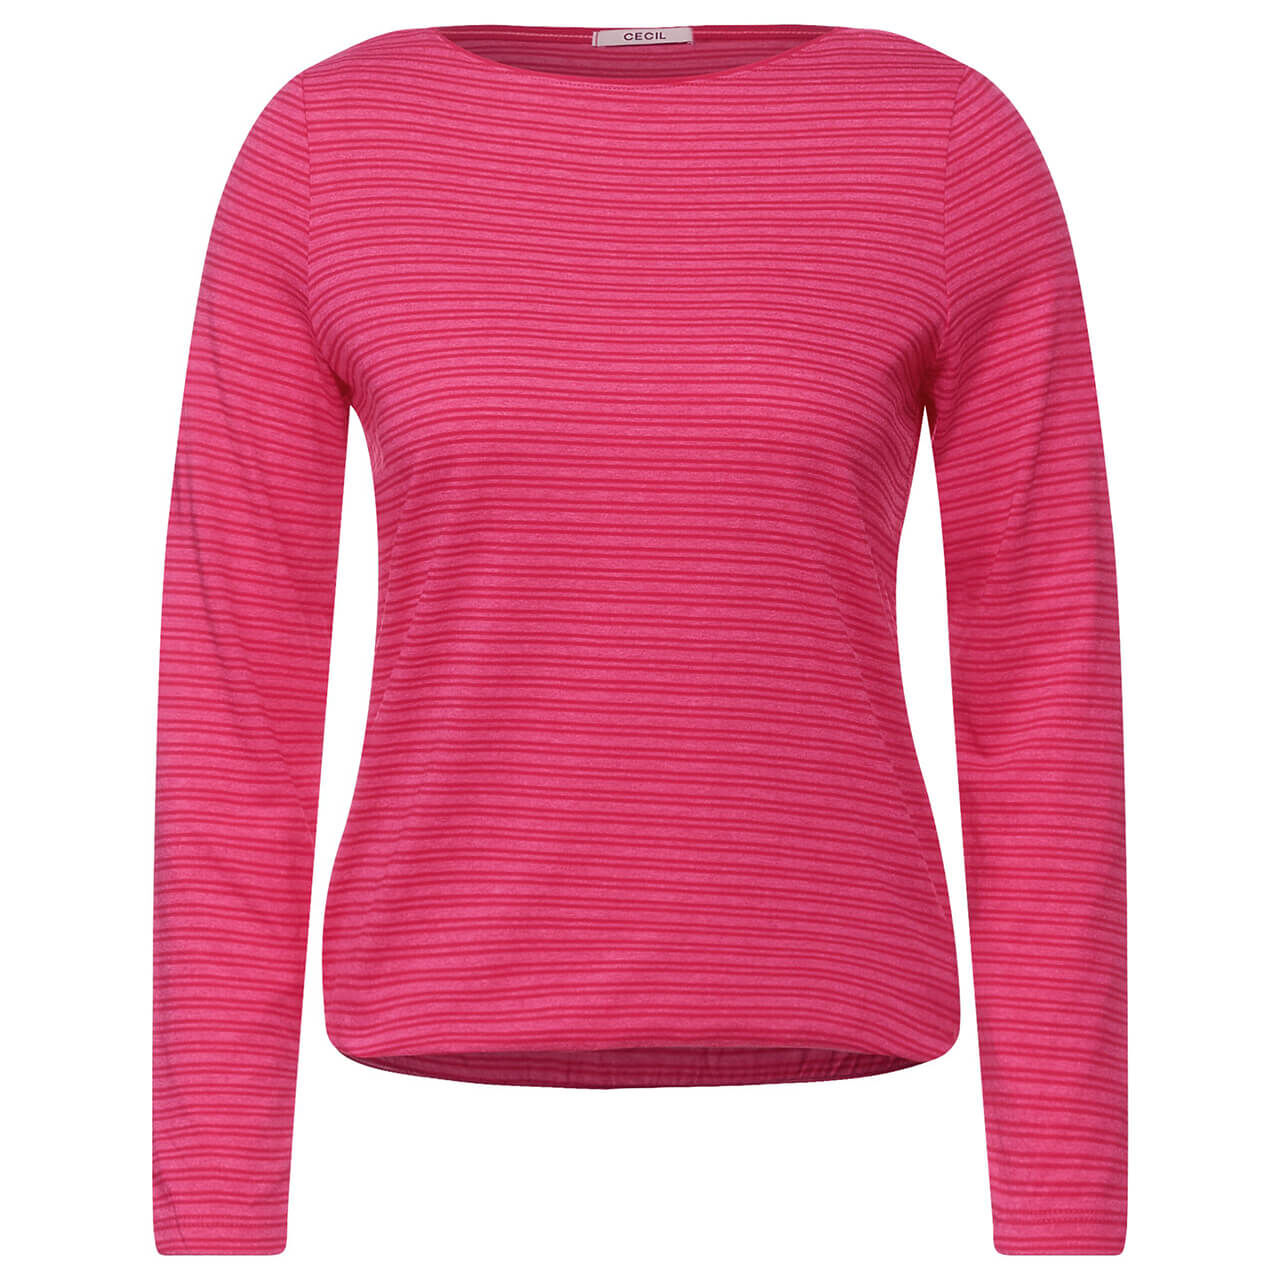 Cecil Overdye Double Stripe Langarm Shirt dynamic pink stripes